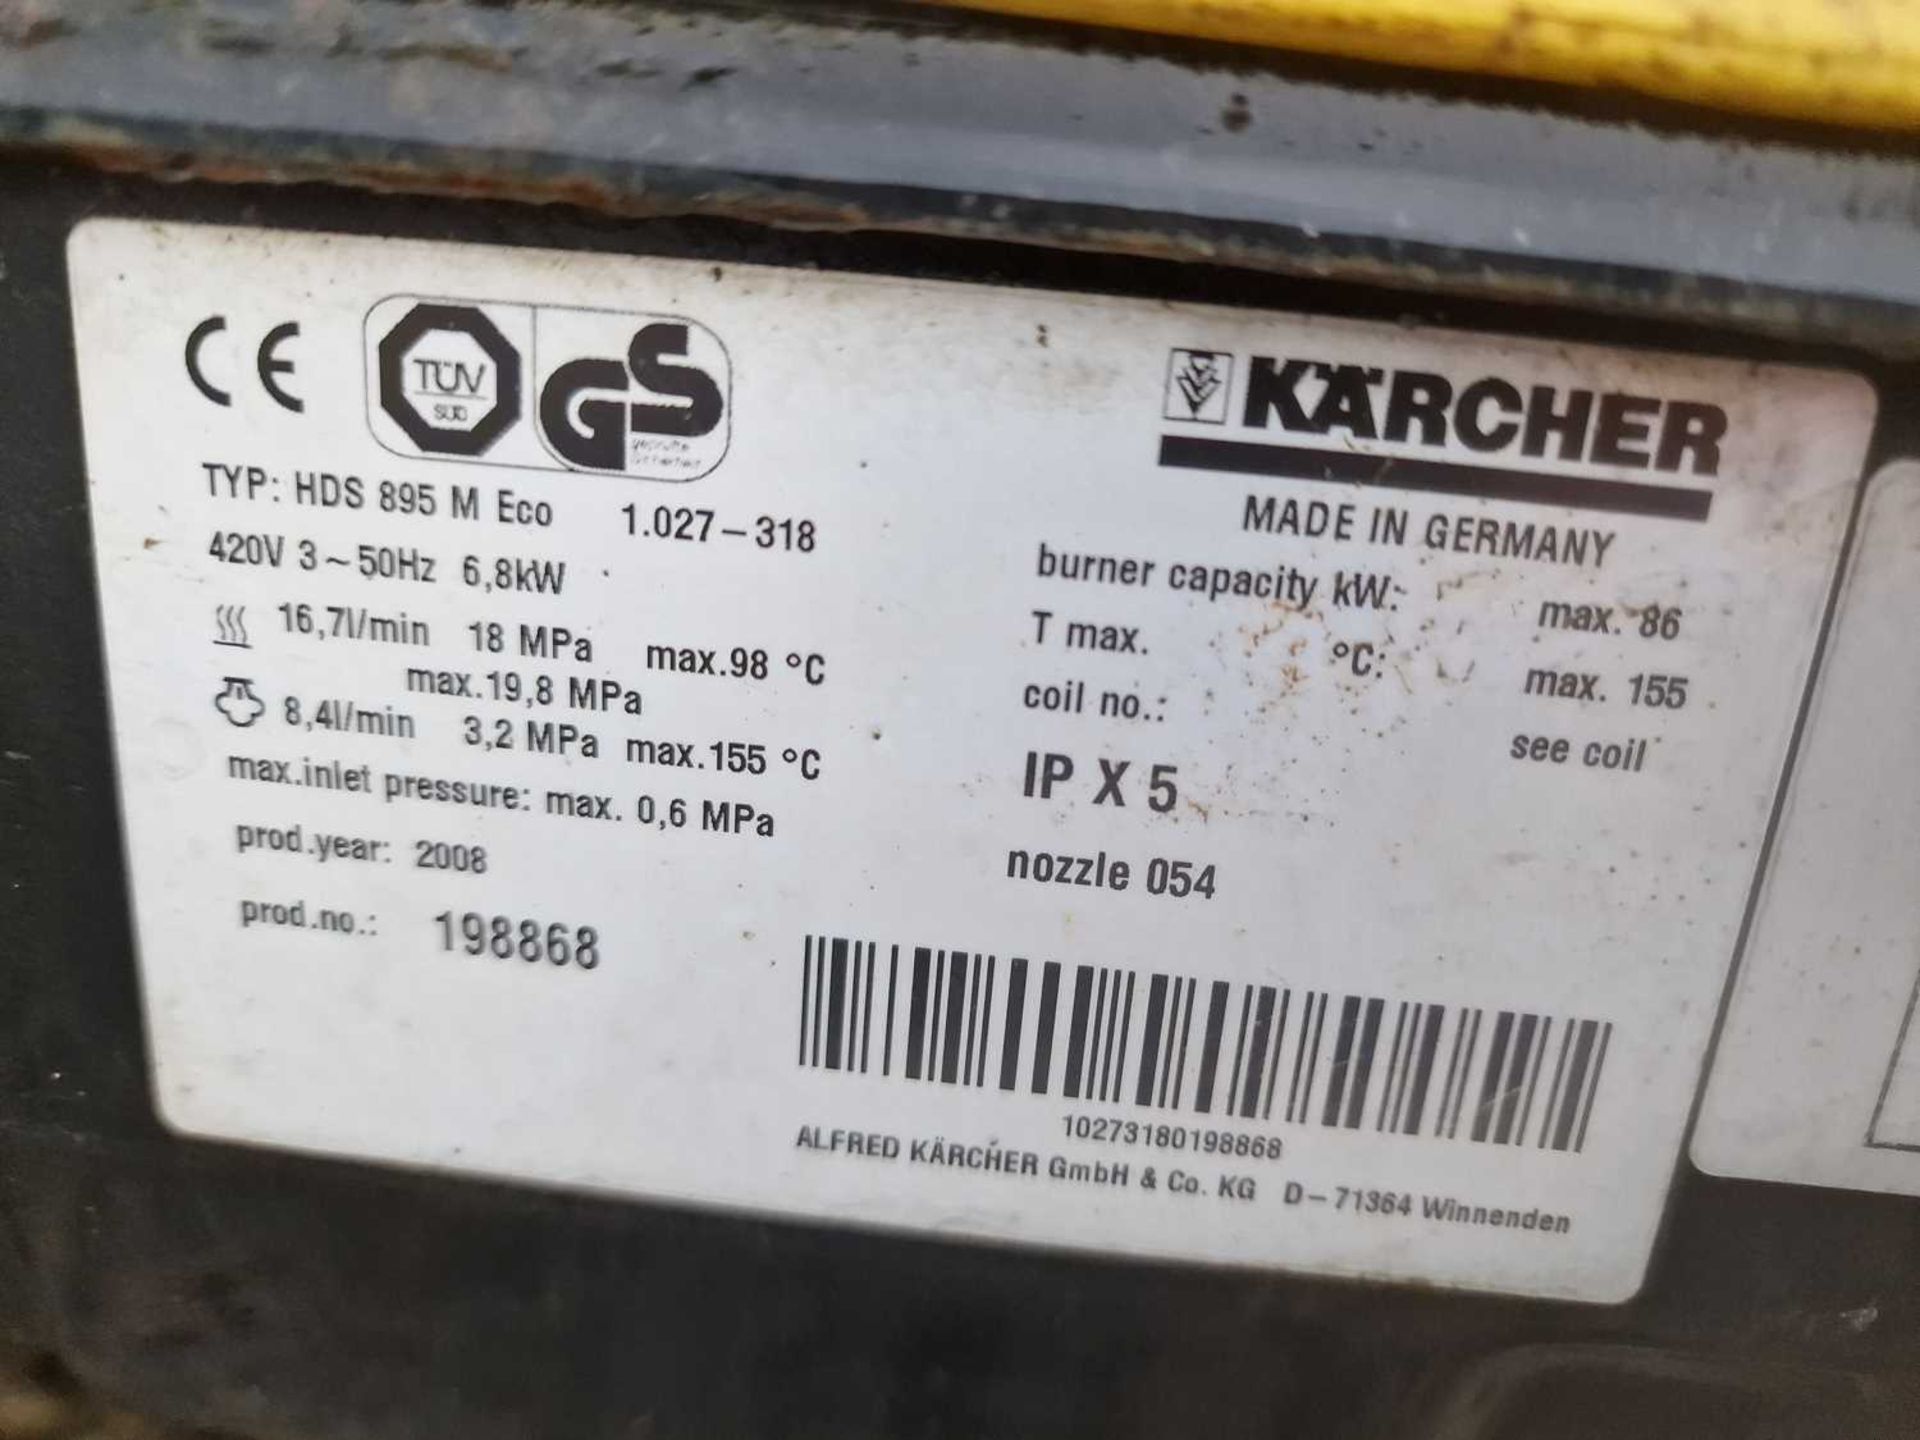 2008 Karcher HDS895M Eco 400Volt Pressure Washer - Image 9 of 9